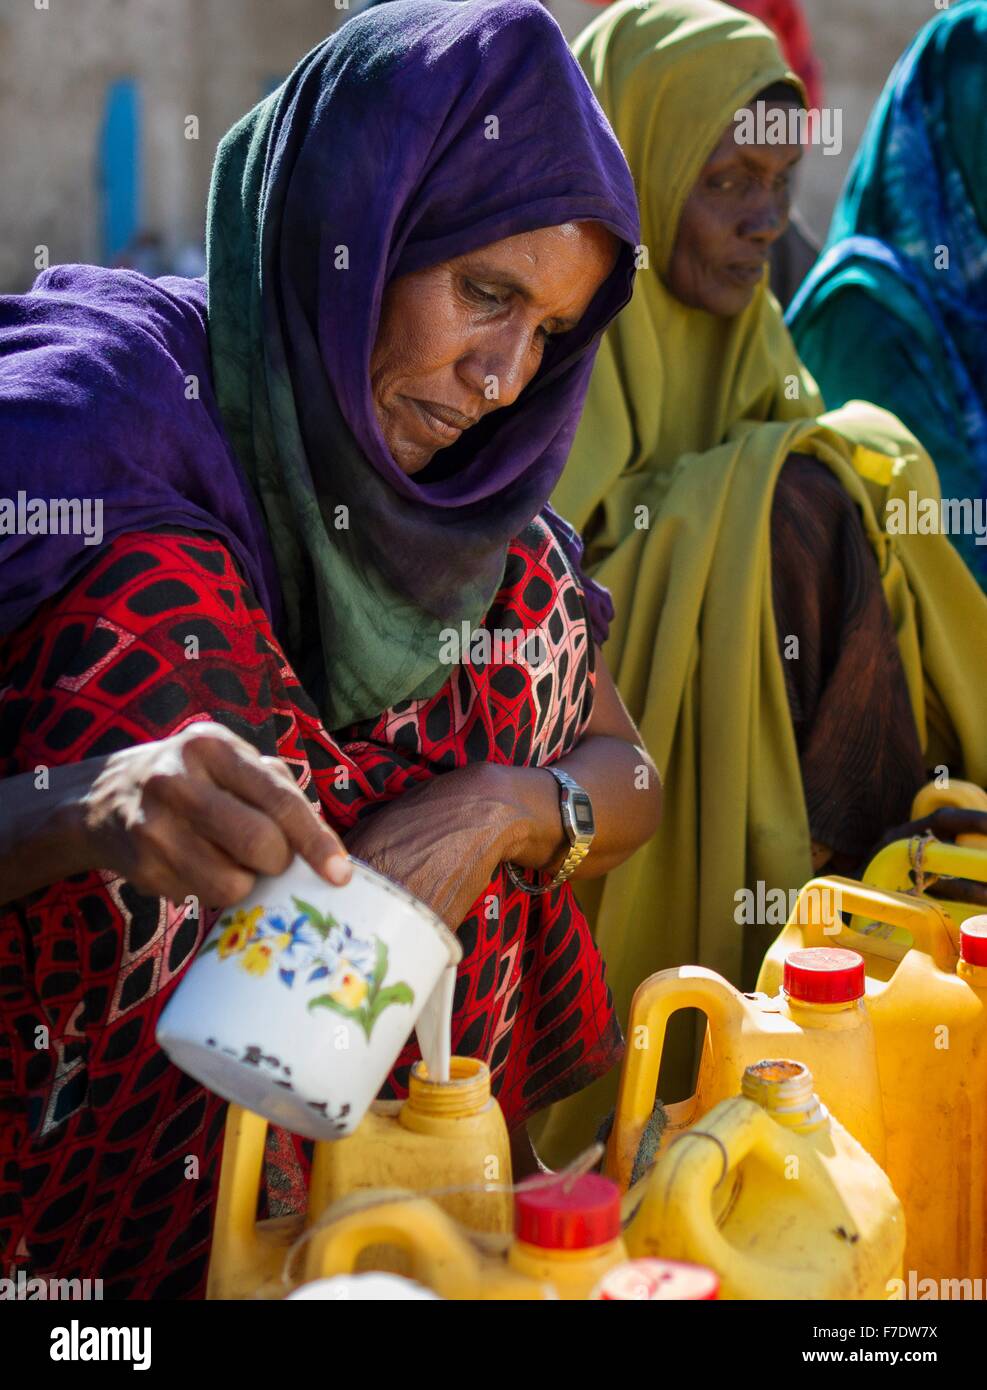 Äthiopische Frauen verkaufen frische Kamelmilch entlang der Straße am 23. November 2015 in Gode, Somali-Region Äthiopiens. Stockfoto